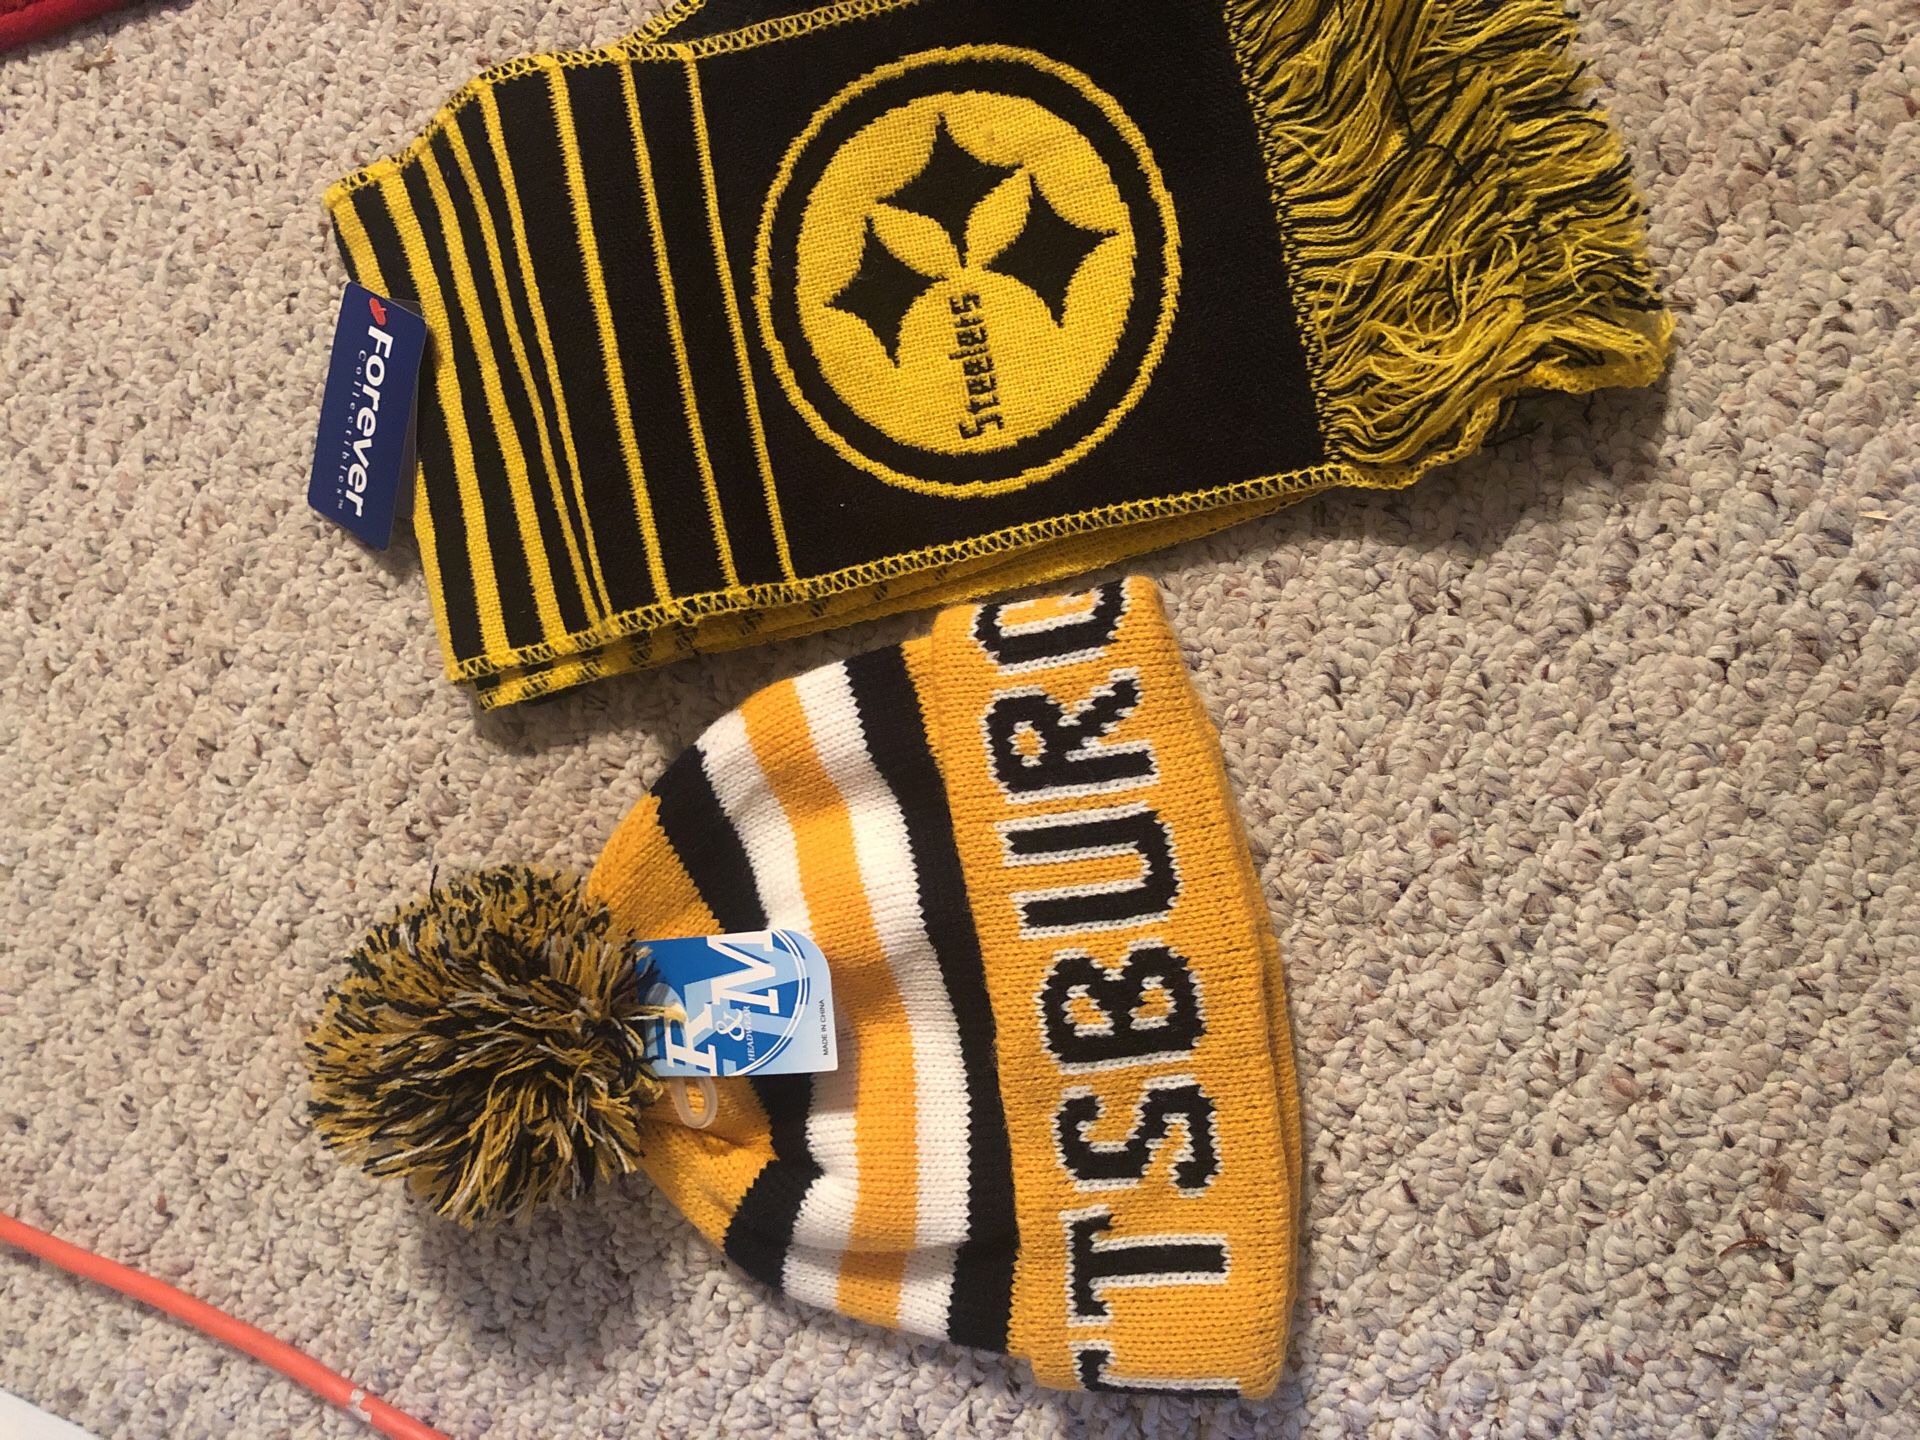 IPittsburgh Steelers Gift set